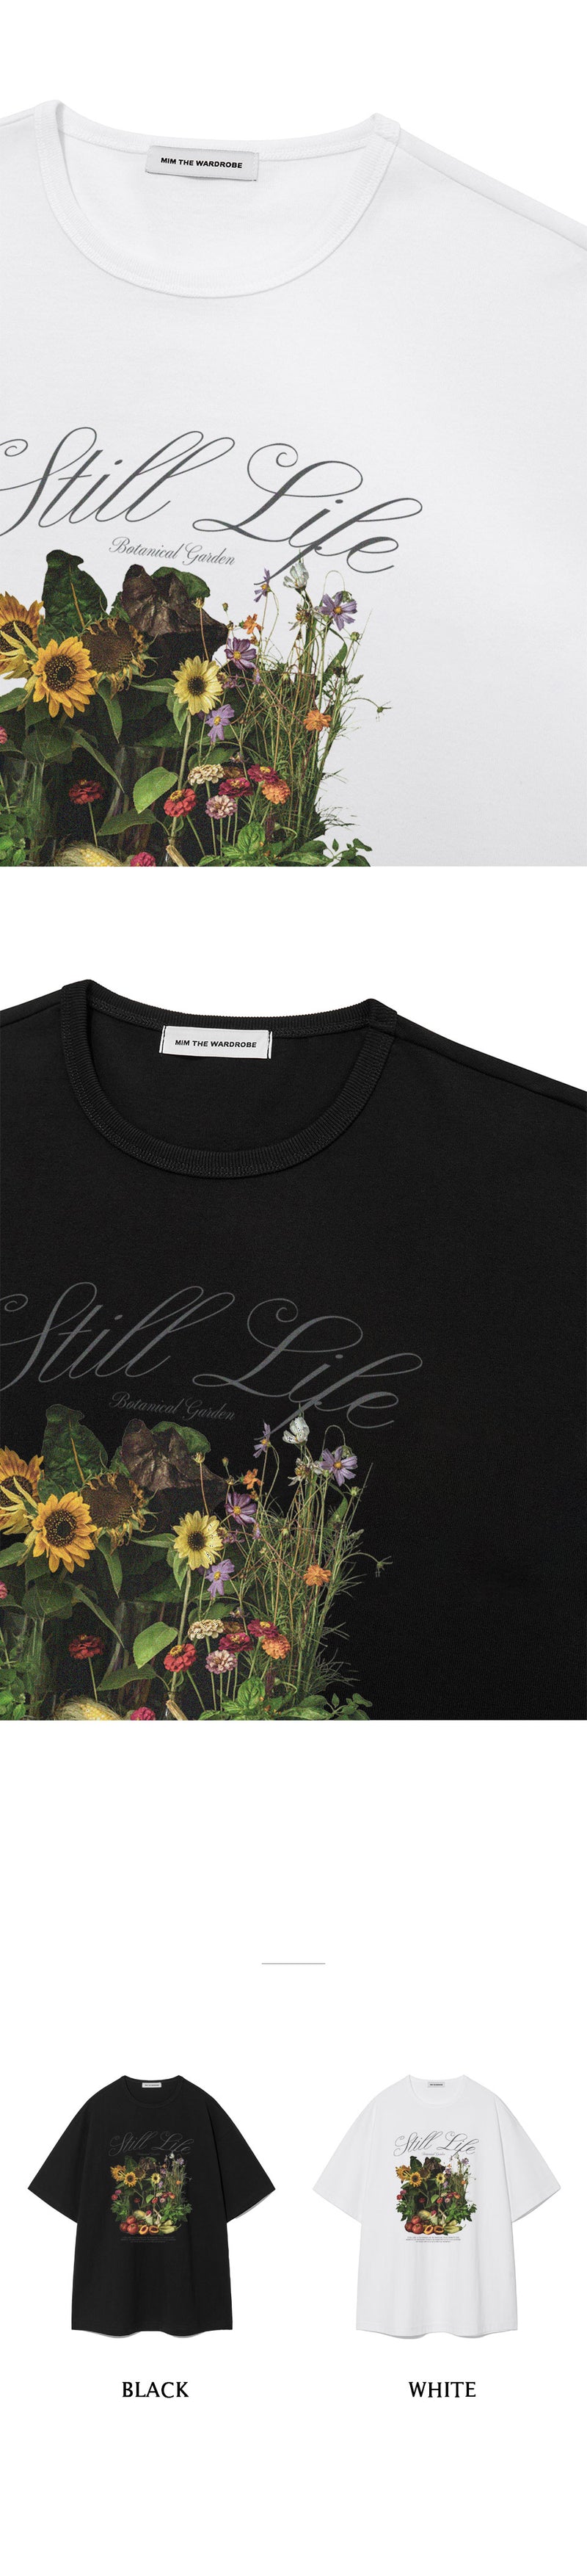 STILL LIFE FLOWER T-SHIRT BLACK